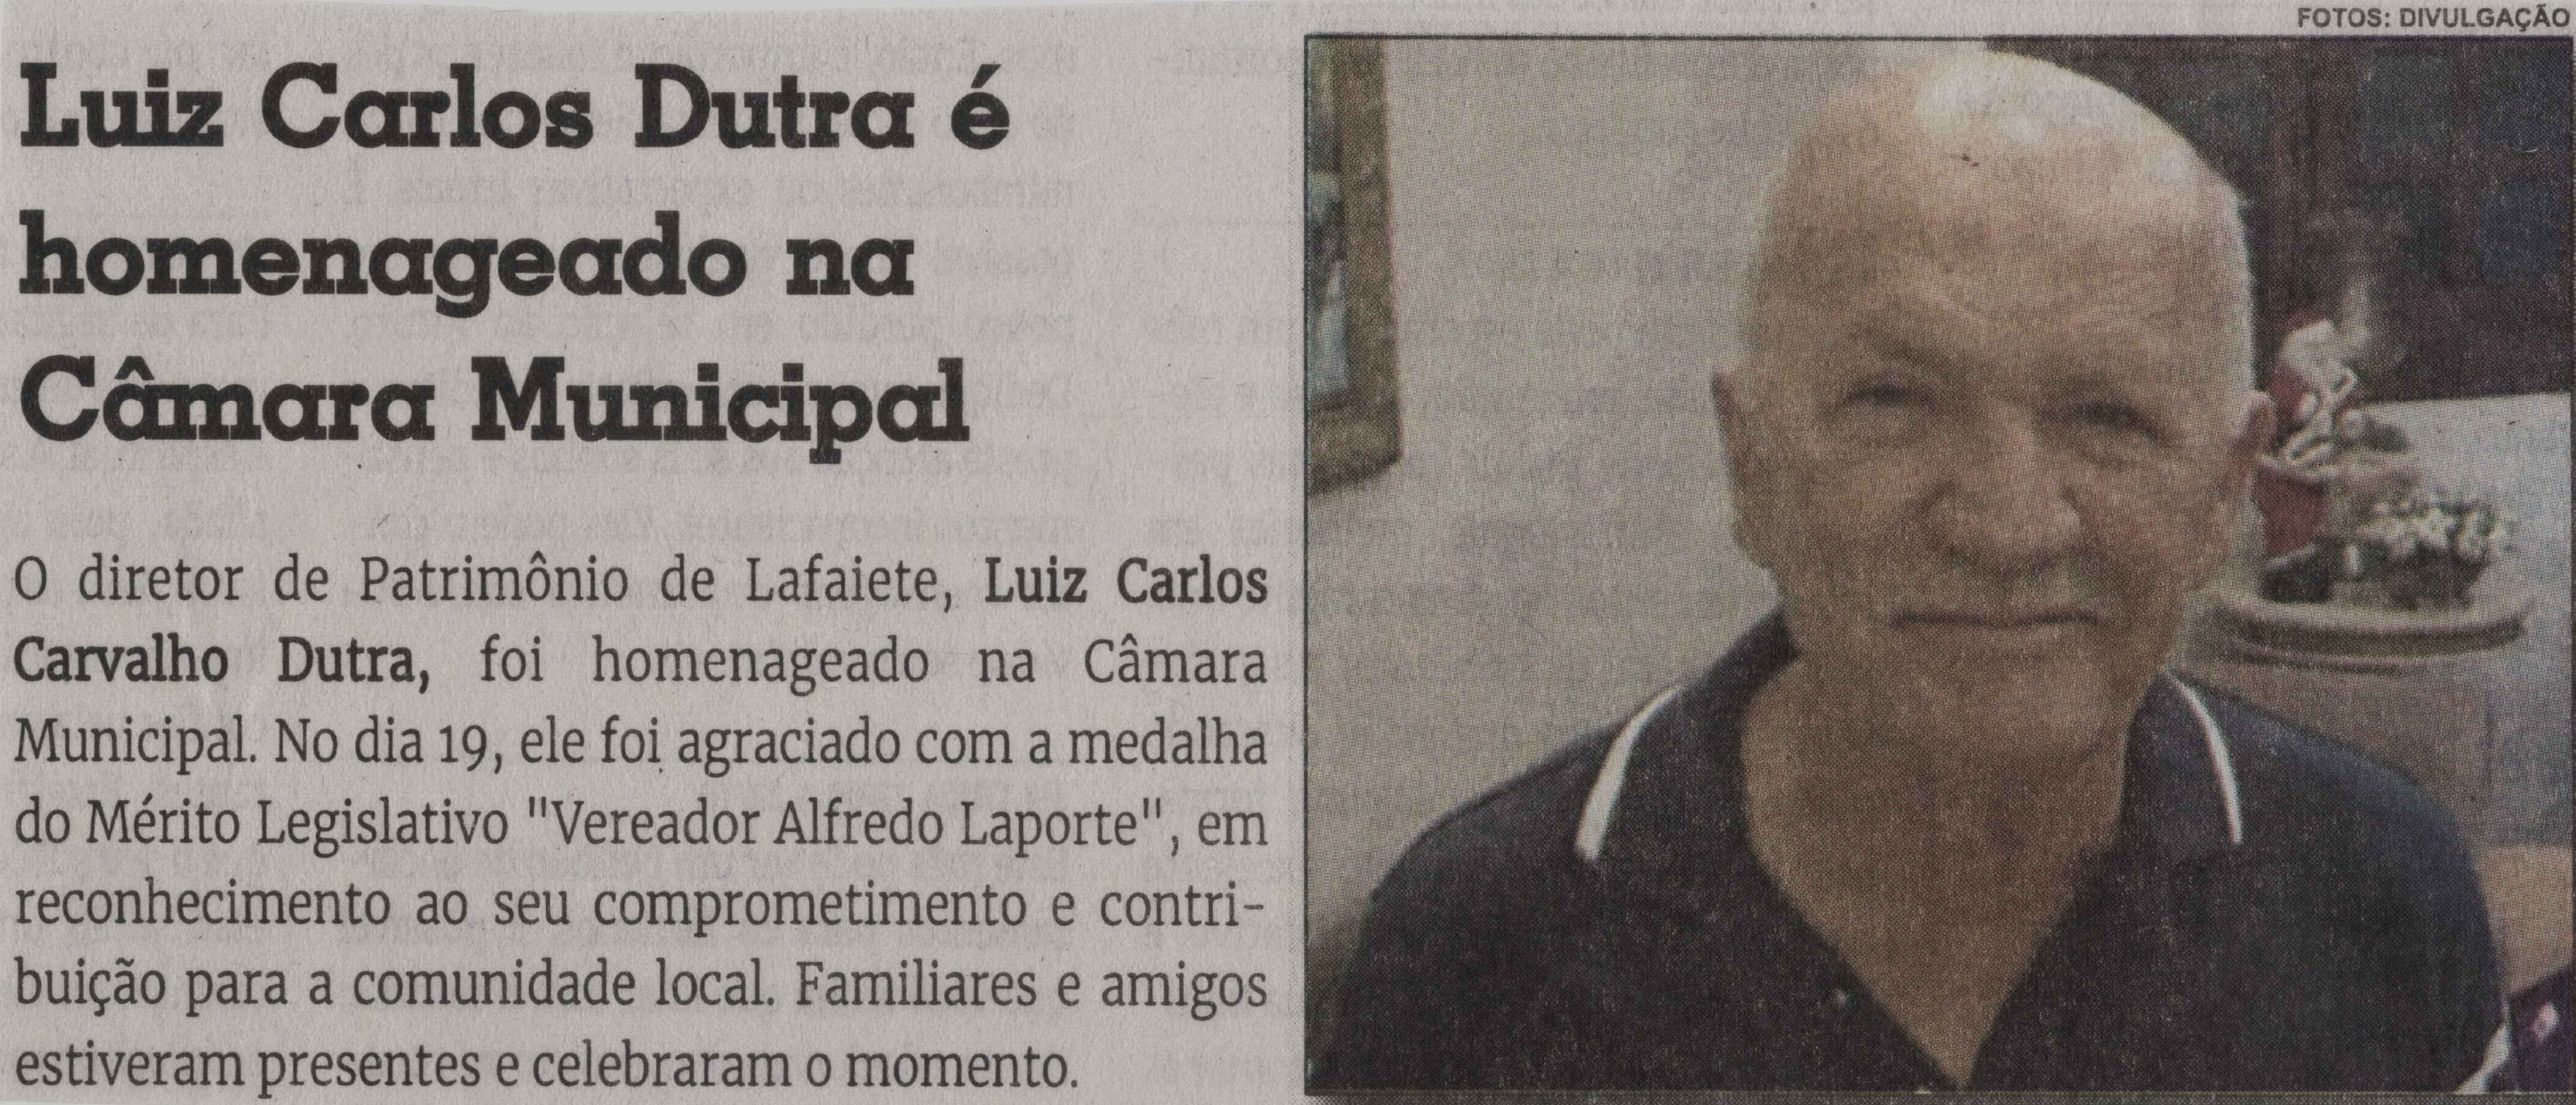 Luiz Carlos Dutra é homenageado na Câmara Municipal. Jornal Correio da Cidade, Conselheiro Lafaiete de 14 a 20 de out. de 2023, 1701ª ed., Cultura, p. 25.